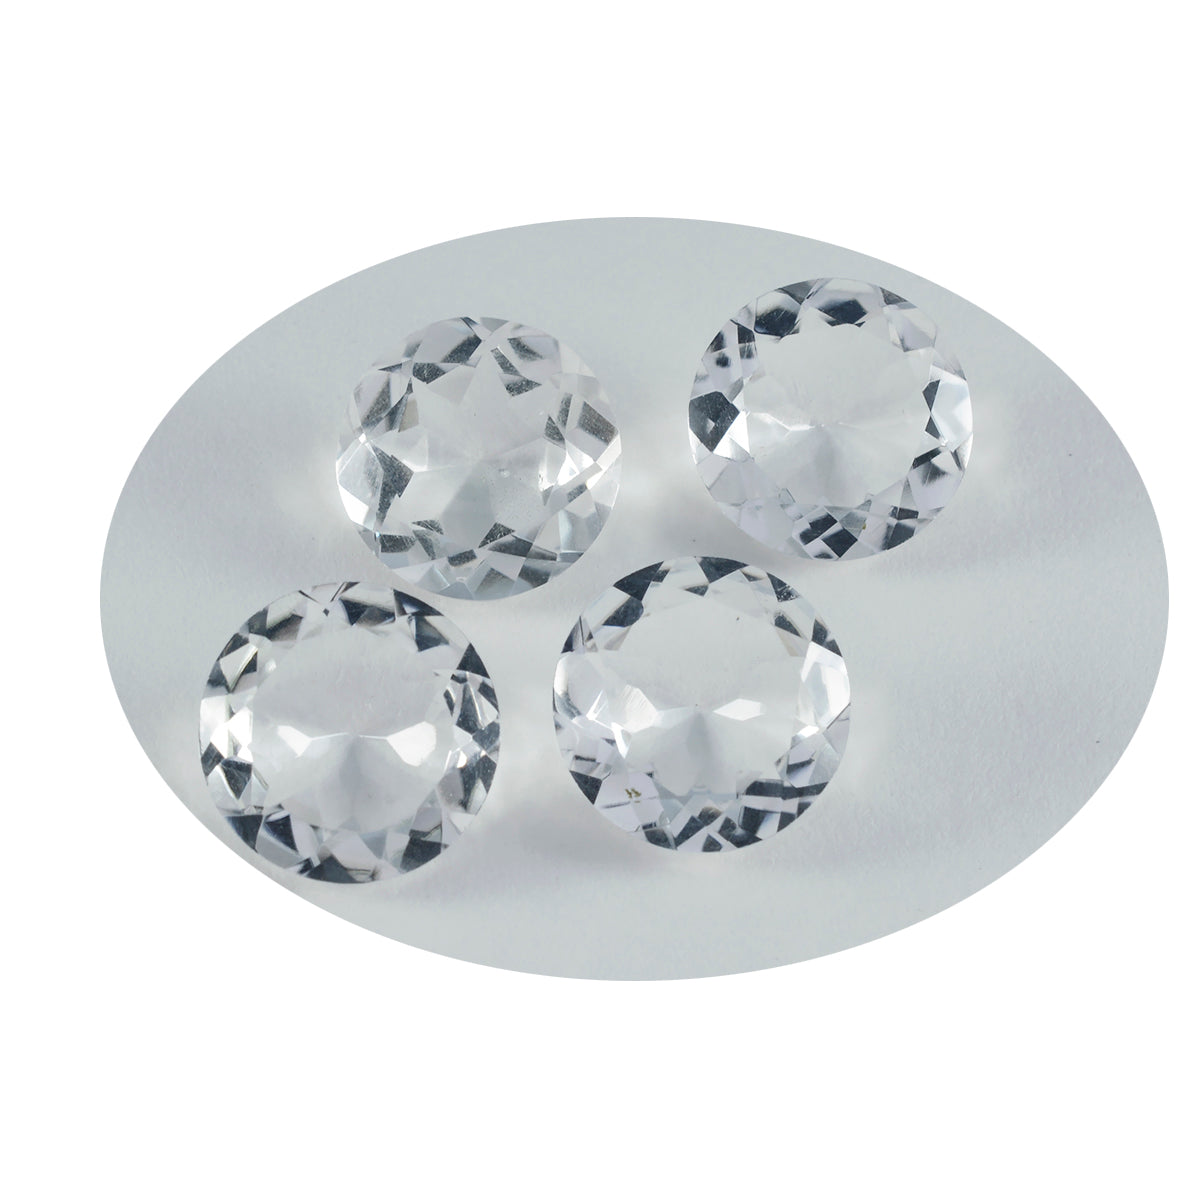 Riyogems – quartz cristal blanc à facettes 13x13mm, forme ronde, pierres précieuses de bonne qualité, 1 pièce